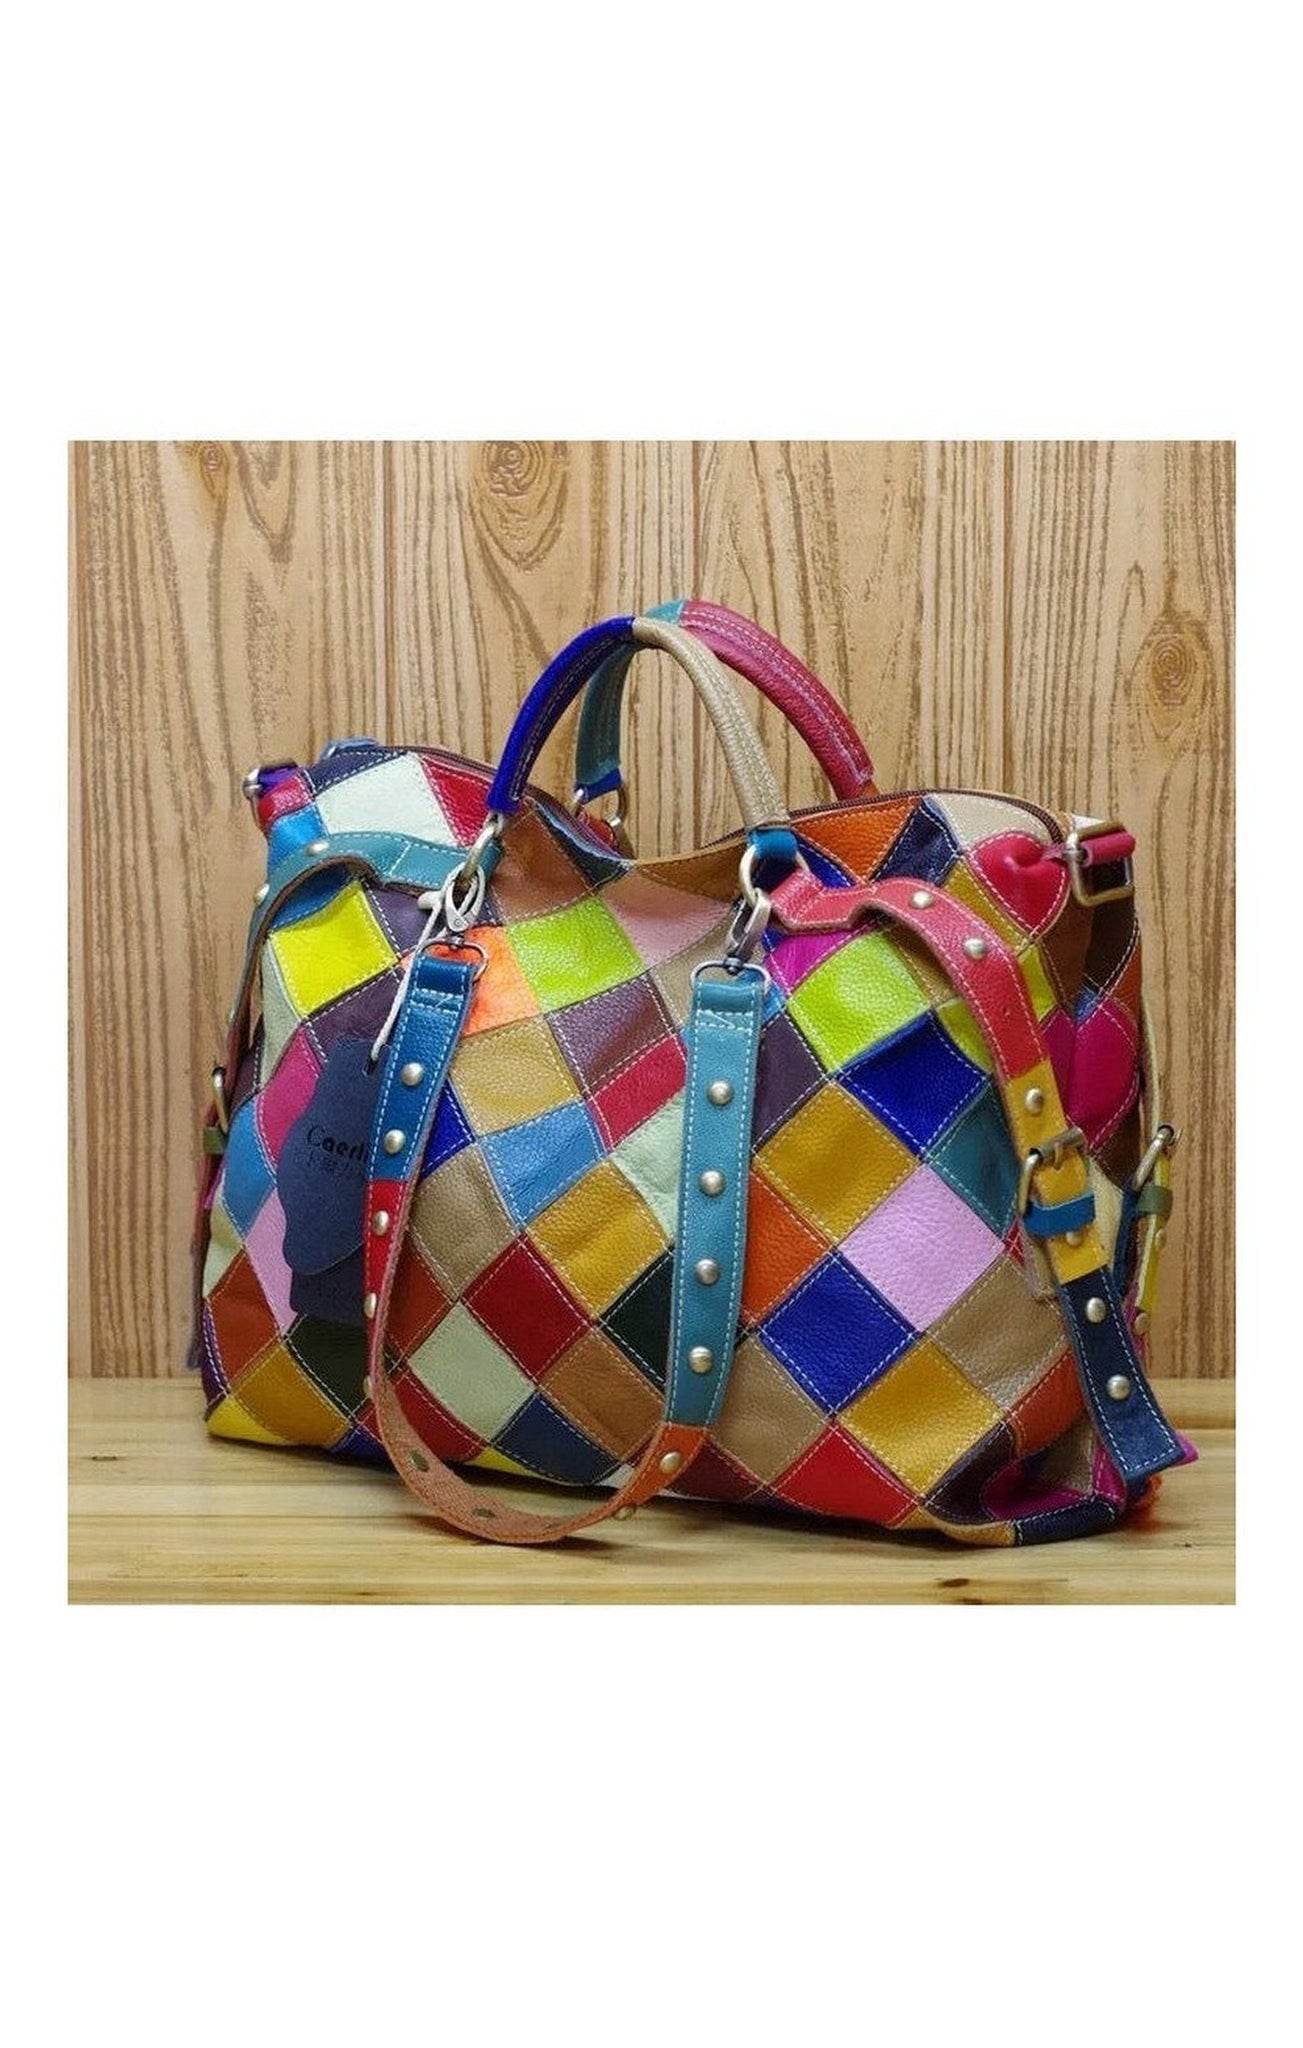 Multicolored purse bag